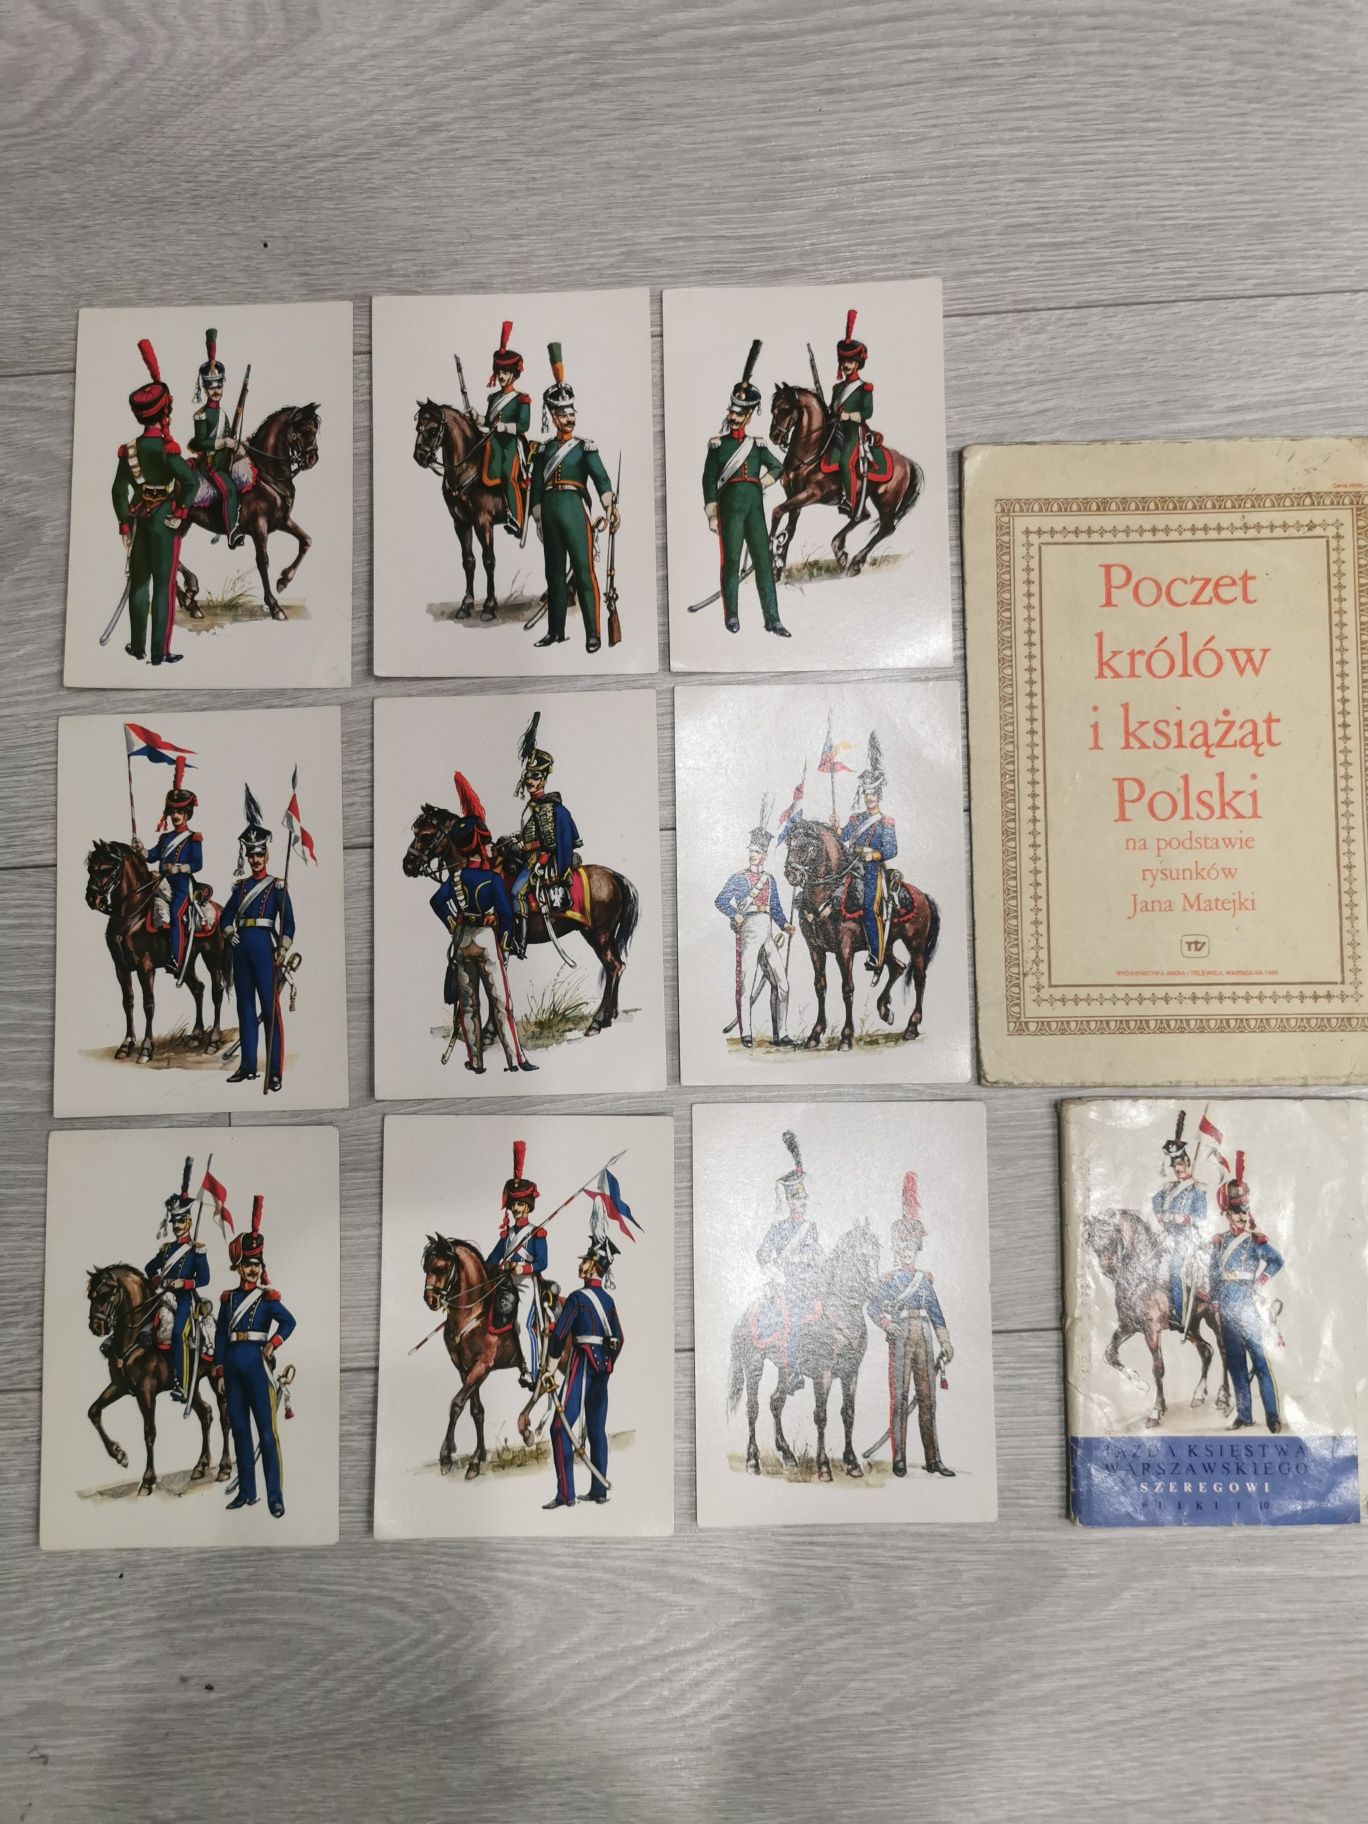 Pocztówki Jazda księstwa SZEREGOWI zestaw 9 sztuk gratis poczet królów